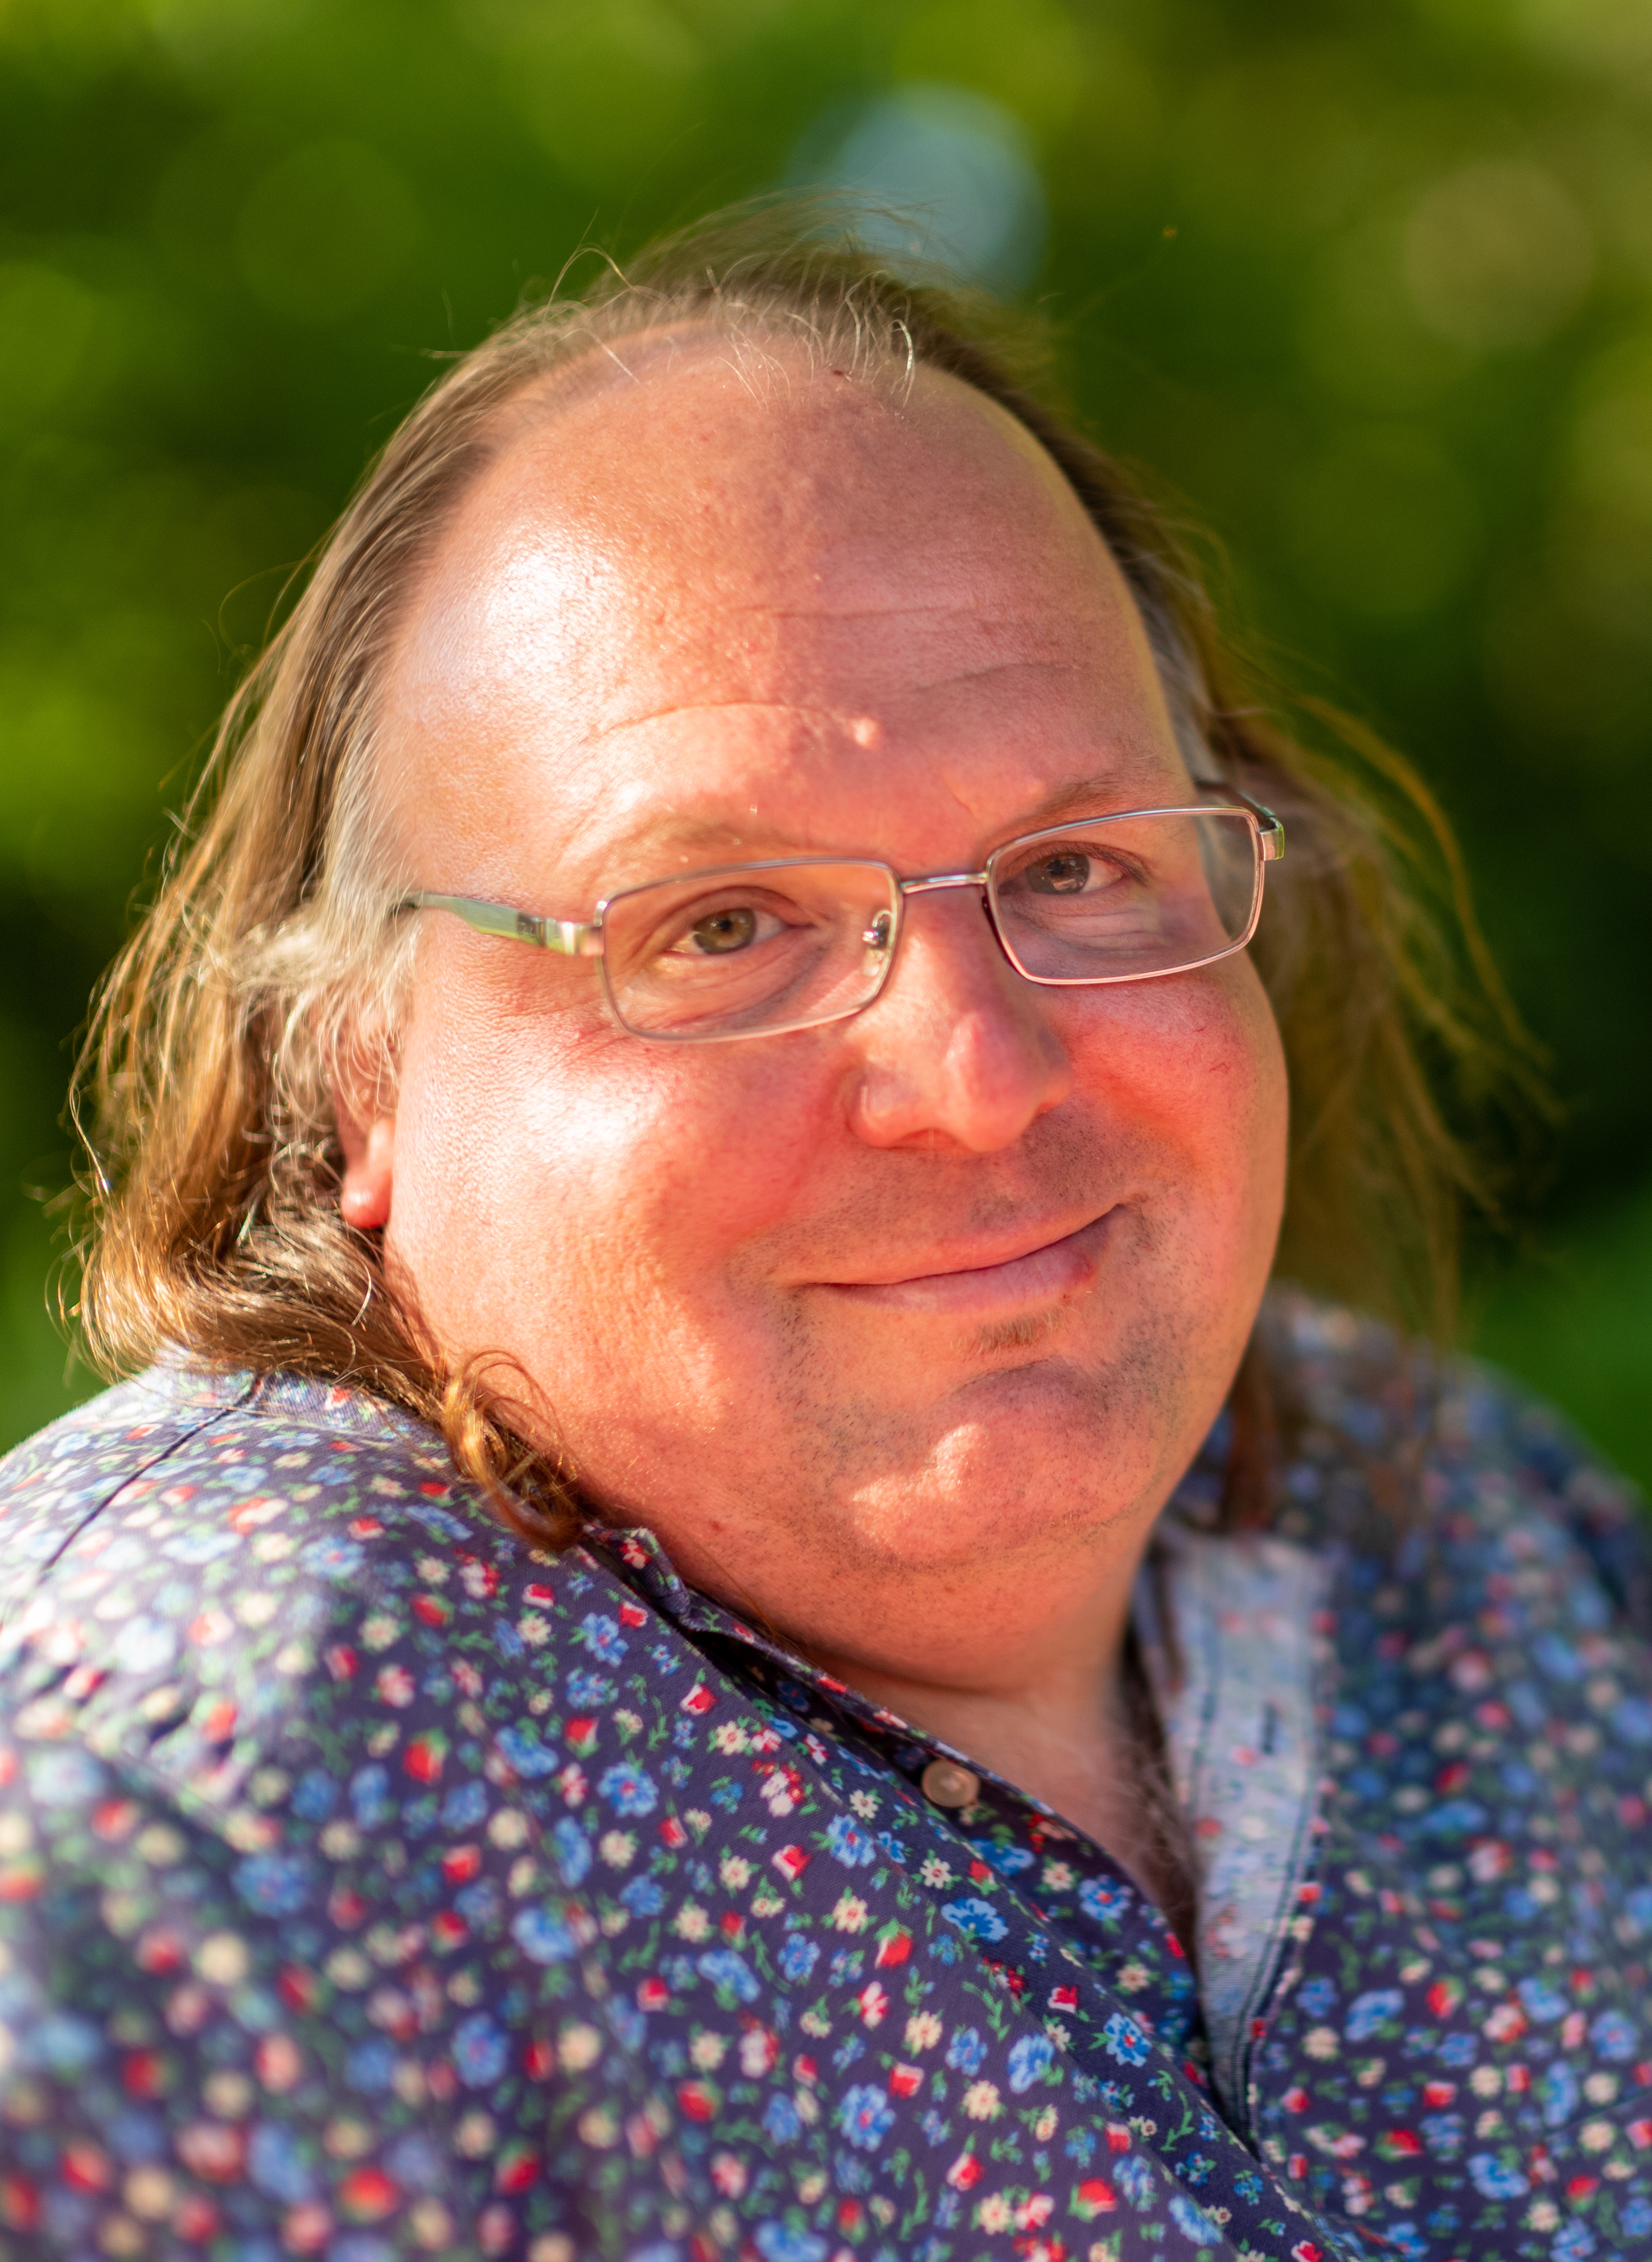 auteur Ethan Zuckerman de la citation Le terme «cybère» a tendance à être utilisé uniquement dans le contexte de la critique. Appeler quelqu'un de cybère implique qu'il a un sentiment irréaliste et naïvement surréflété de ce que la technologie rend possible et une compréhension insuffisante des forces qui régissent les sociétés.